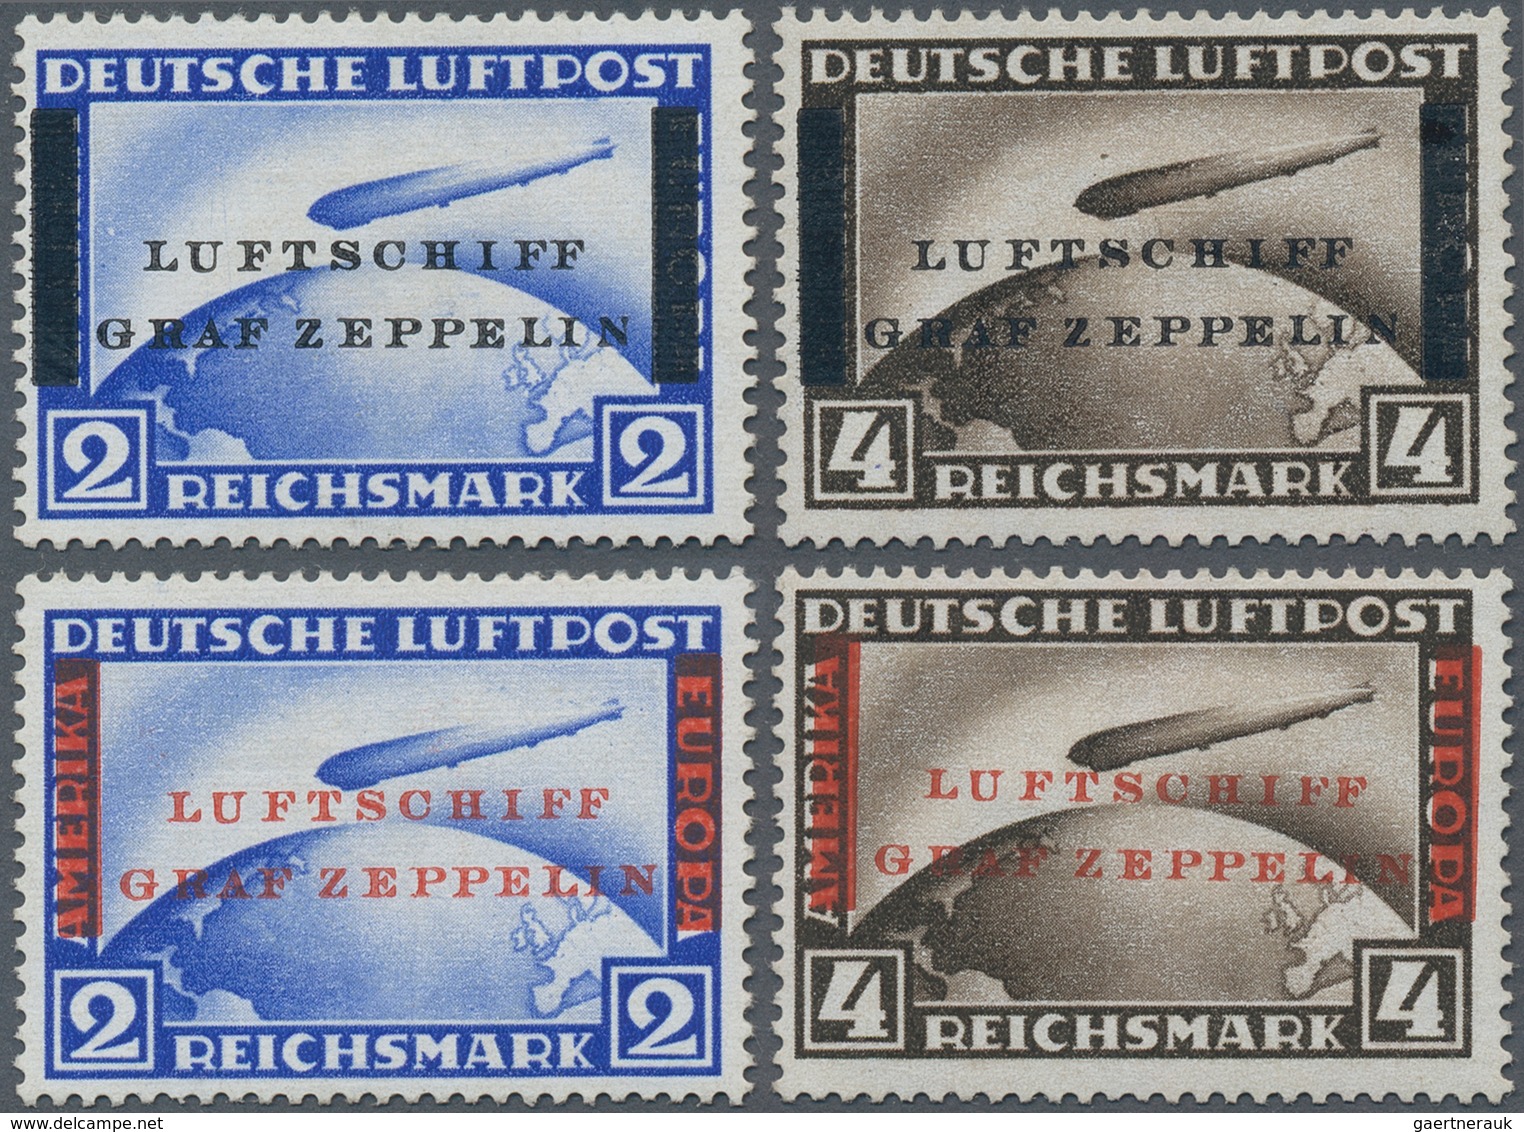 Deutsches Reich - Weimar: 1930, Probedaufdrucke "LUFTSCHIFF GRAF ZEPPELIN" Zur 1. Südamerikafahrt In - Other & Unclassified